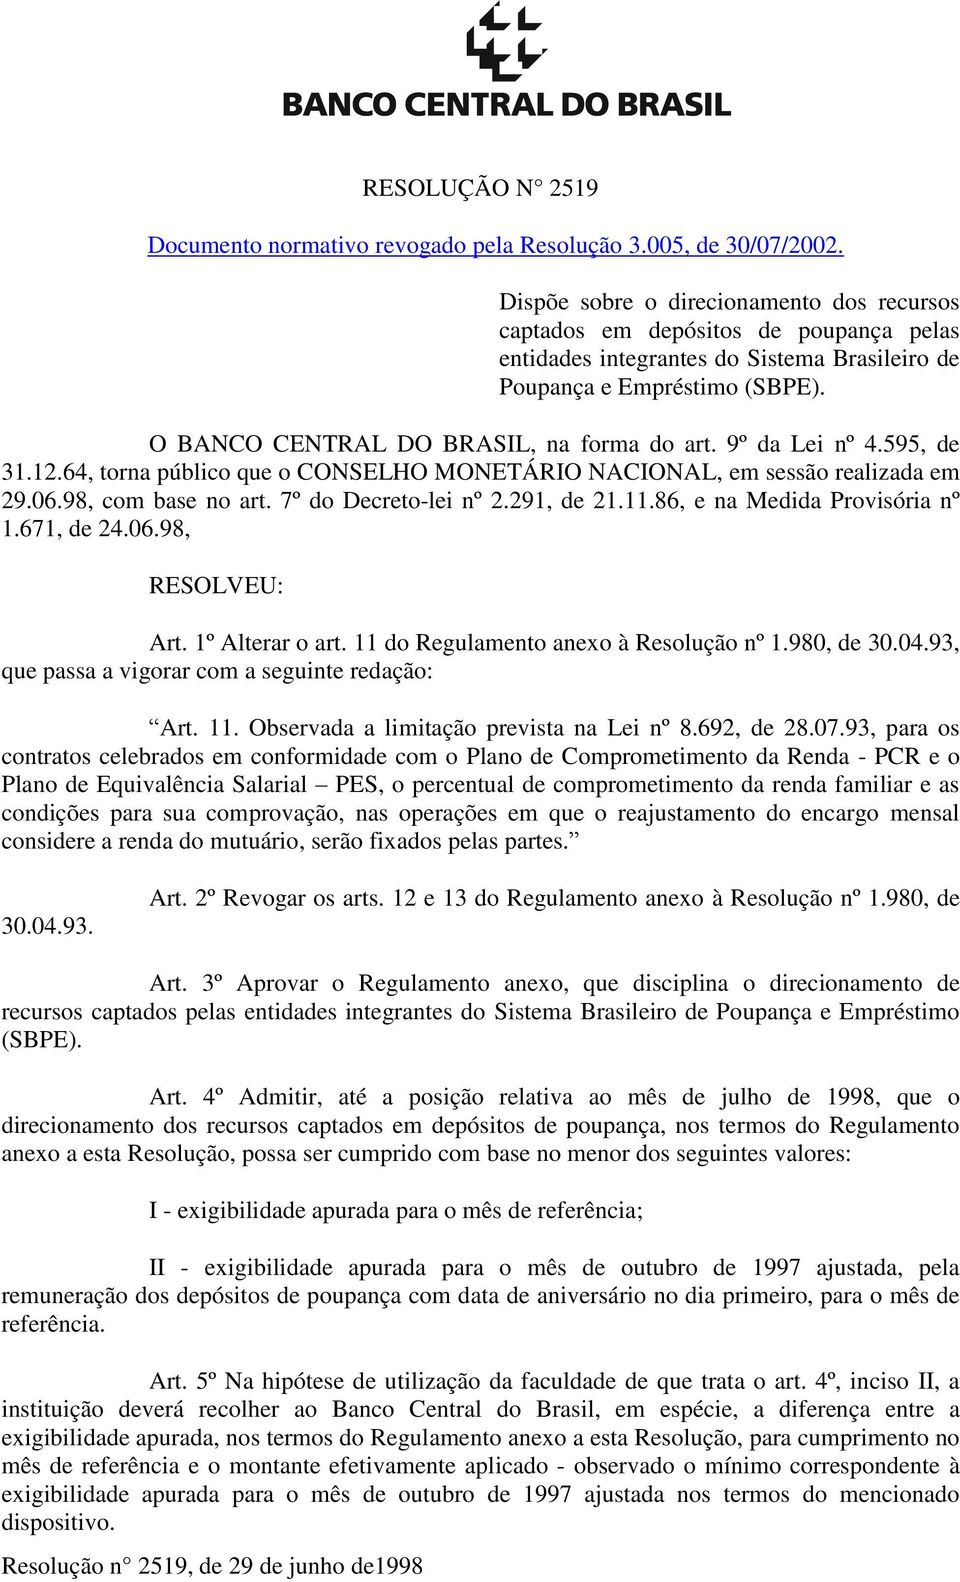 O BANCO CENTRAL DO BRASIL, na forma do art. 9º da Lei nº 4.595, de 31.12.64, torna público que o CONSELHO MONETÁRIO NACIONAL, em sessão realizada em 29.06.98, com base no art. 7º do Decreto-lei nº 2.